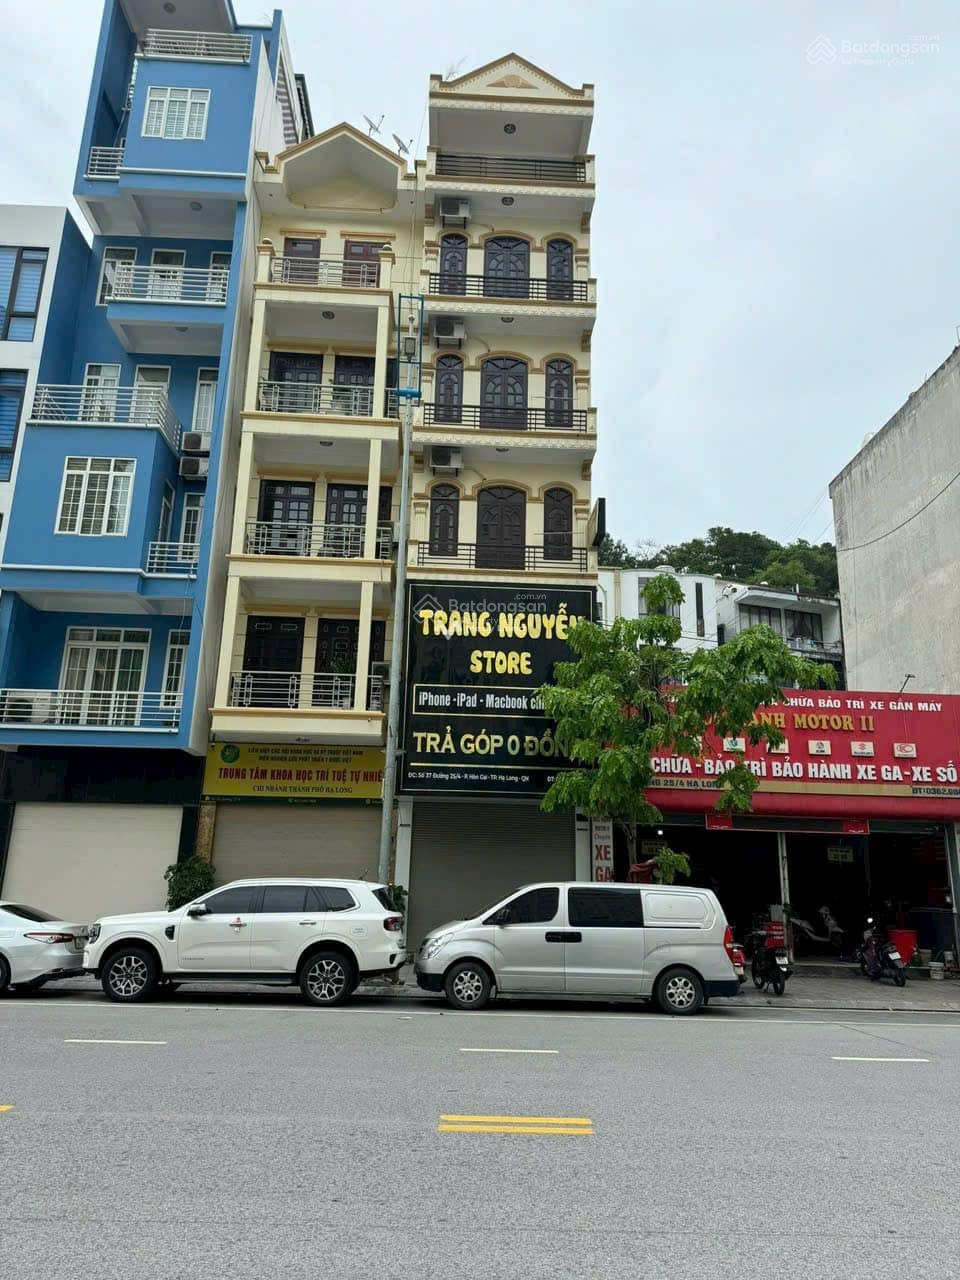 Bán nhà 5 tầng tại Đường 25/4, Hồng Gai, Hạ Long, Quảng Ninh. Diện tích 63,23m2, giá 17,8 tỷ